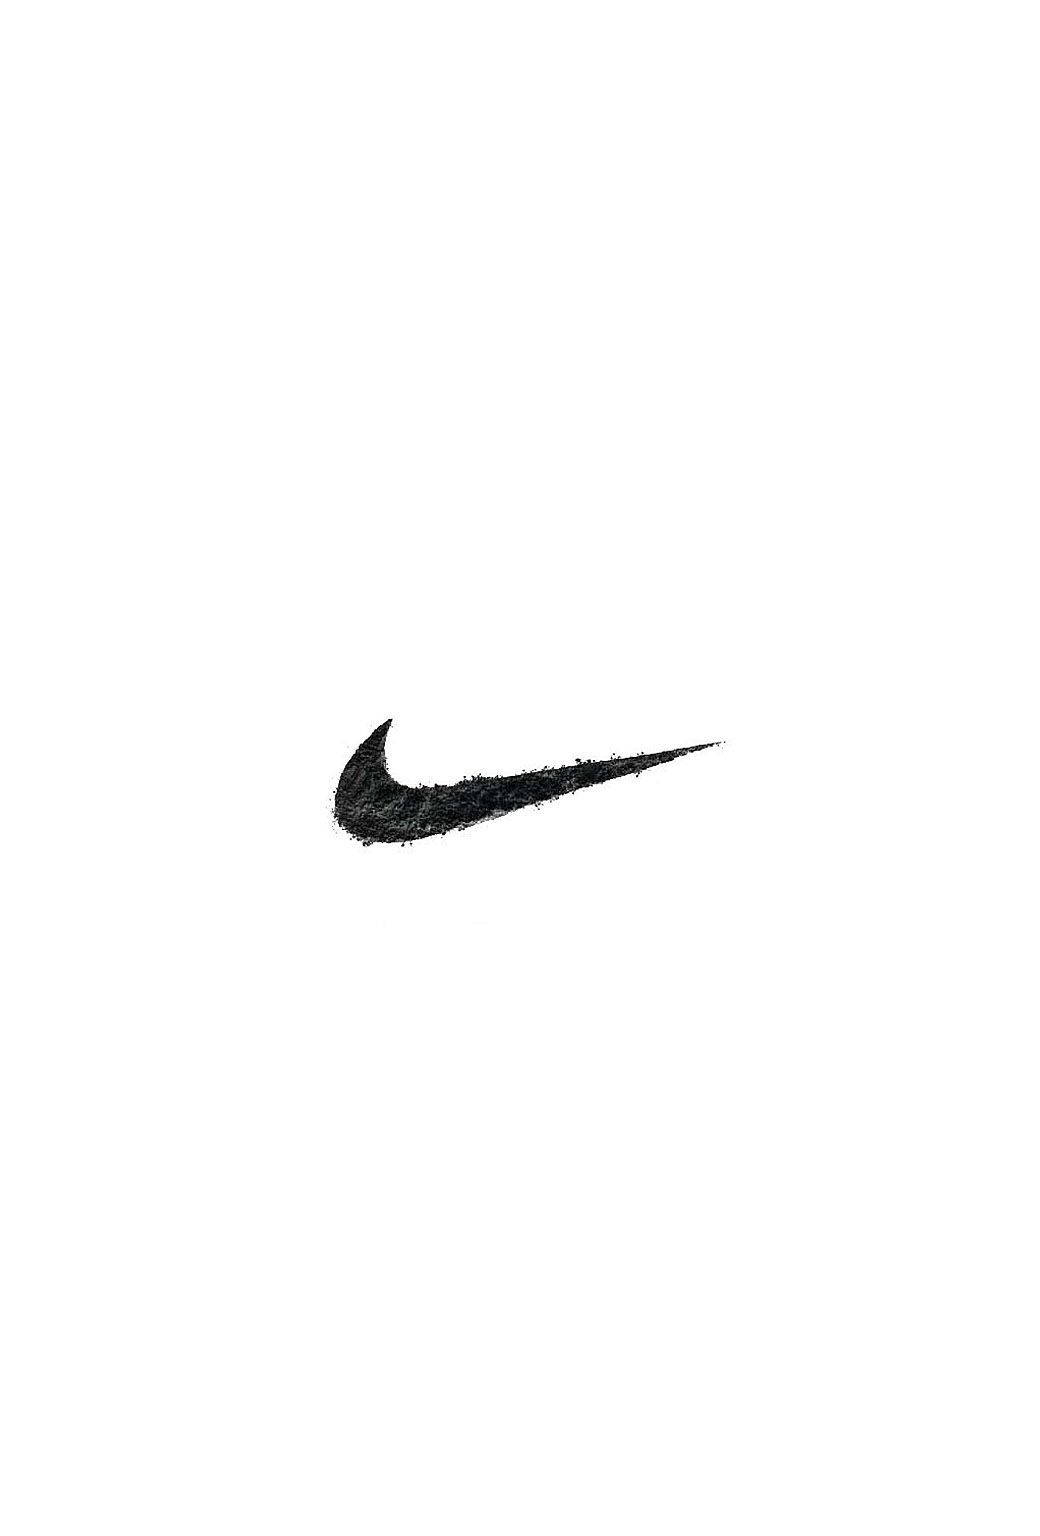 Weiß Mit Nike-logo Iphone Wallpaper